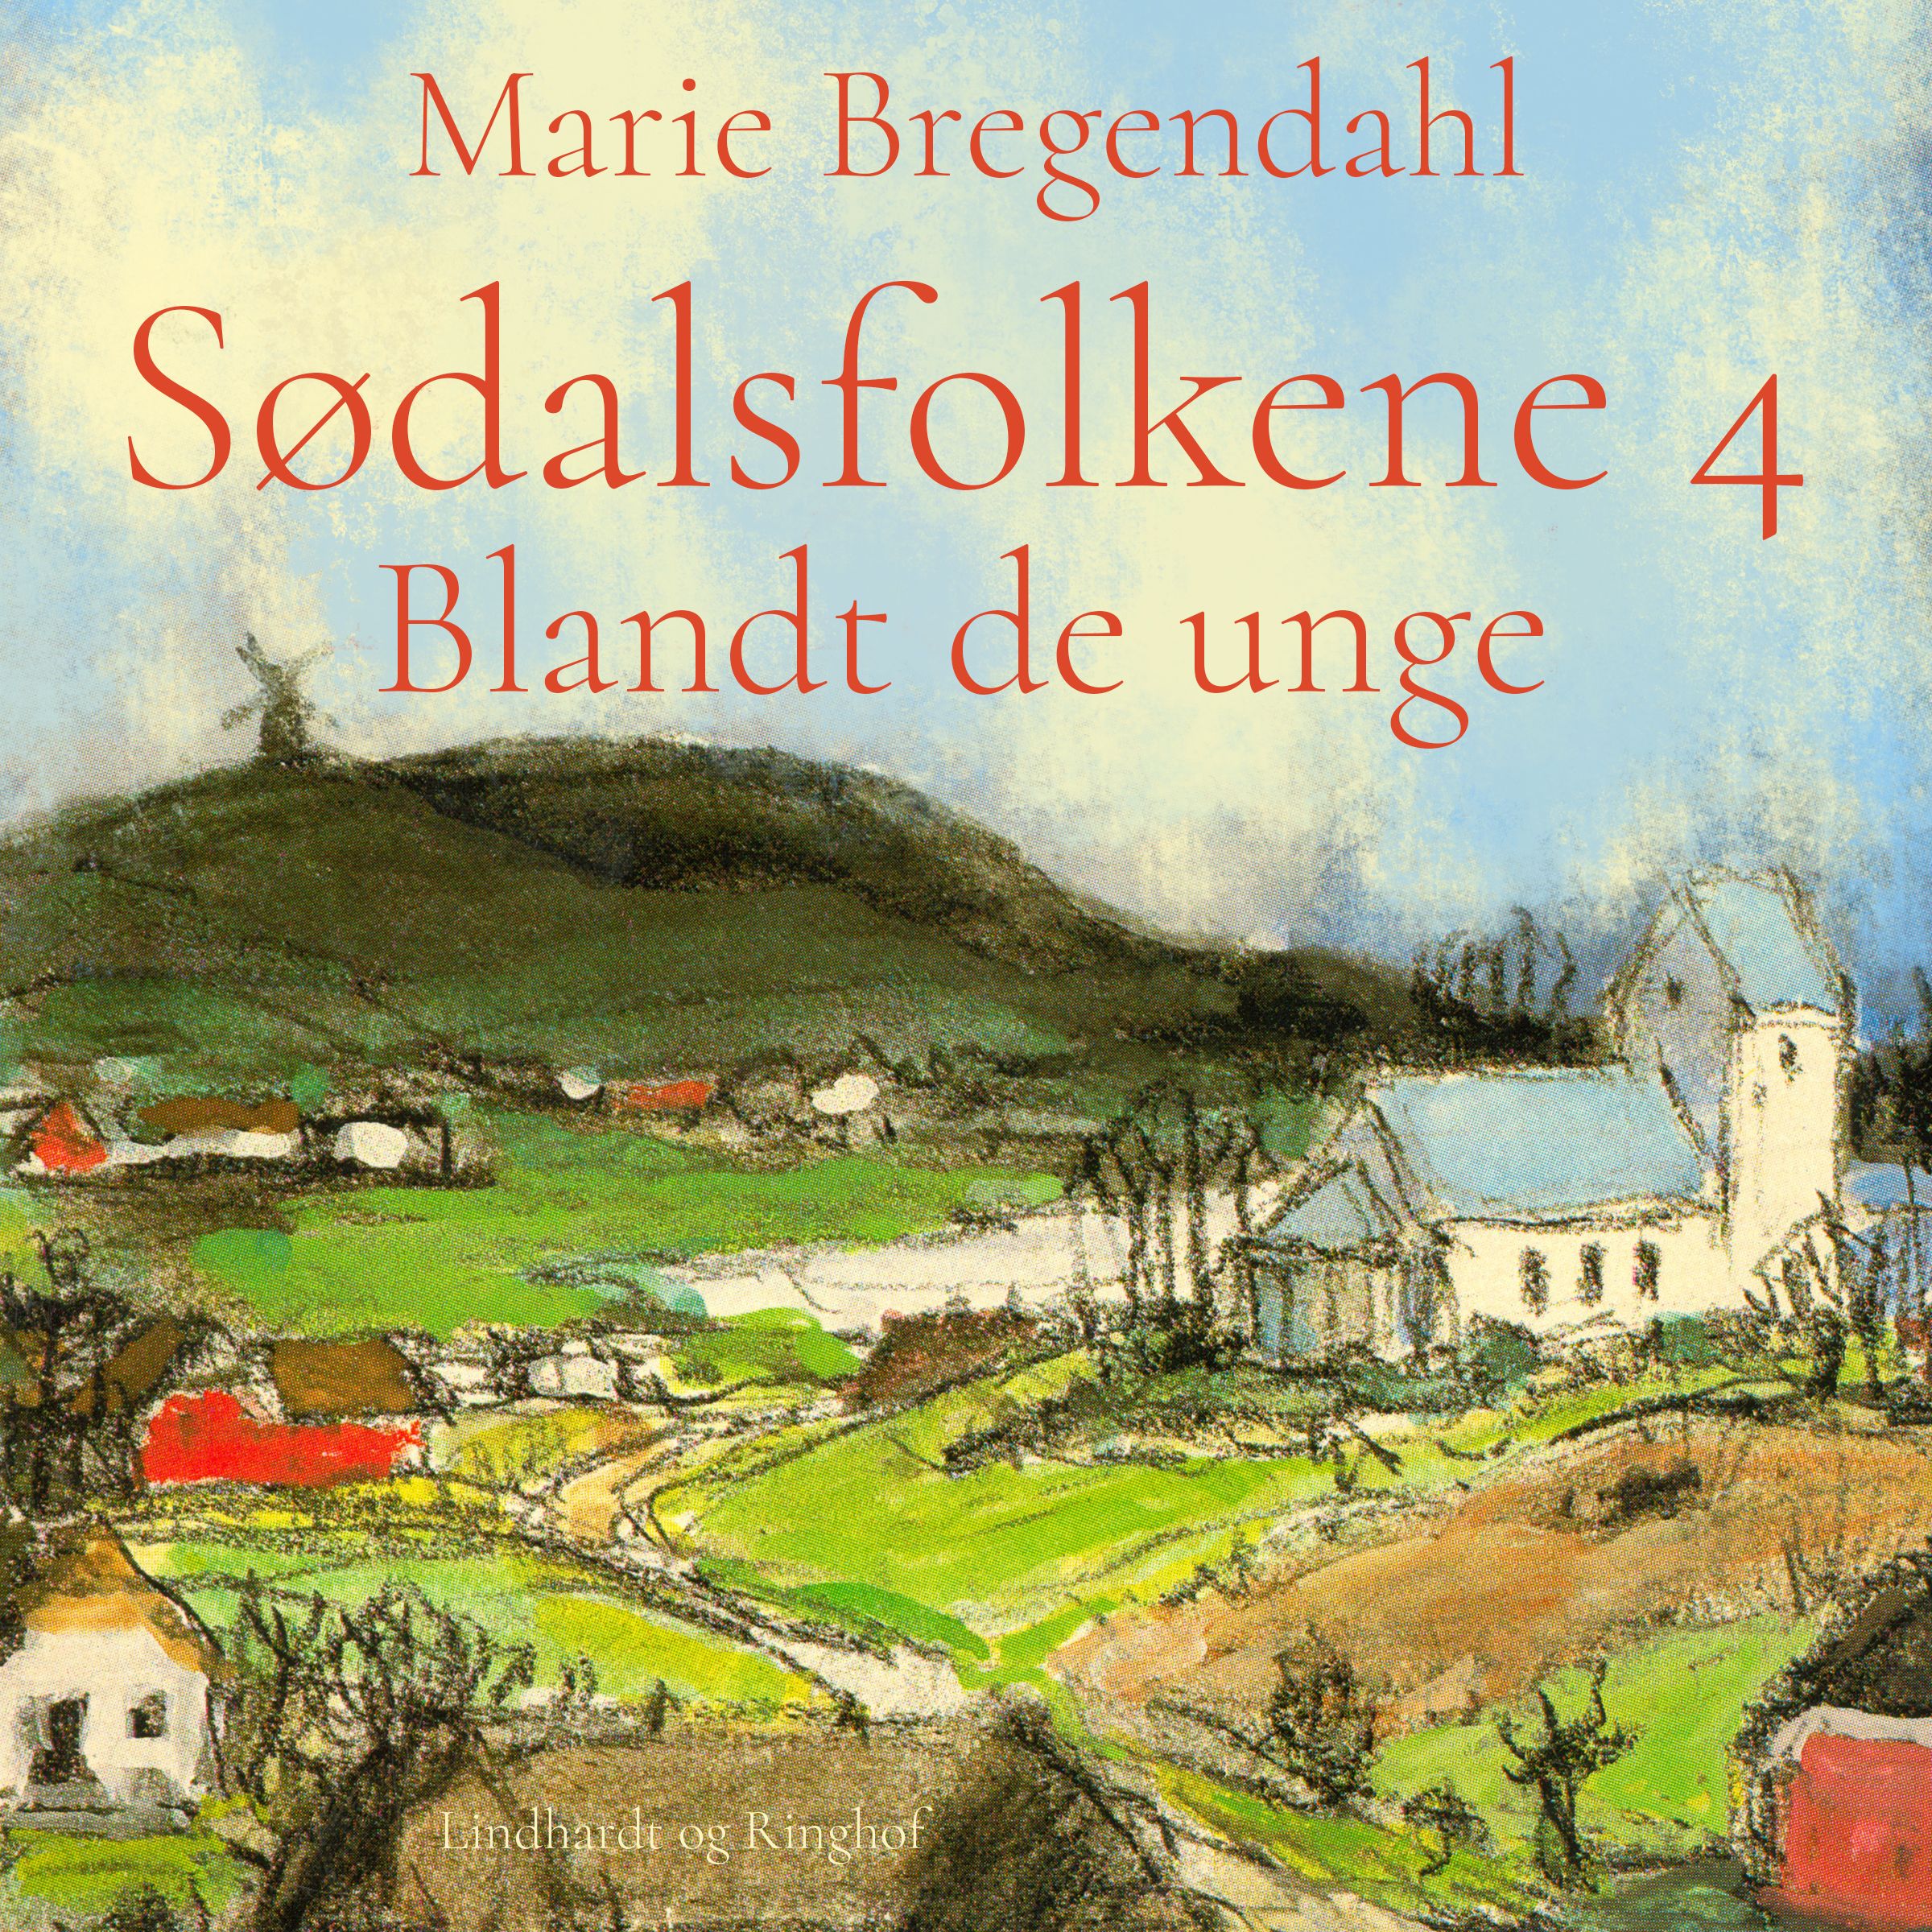 Sødalsfolkene - Blandt de unge, ljudbok av Marie Bregendahl